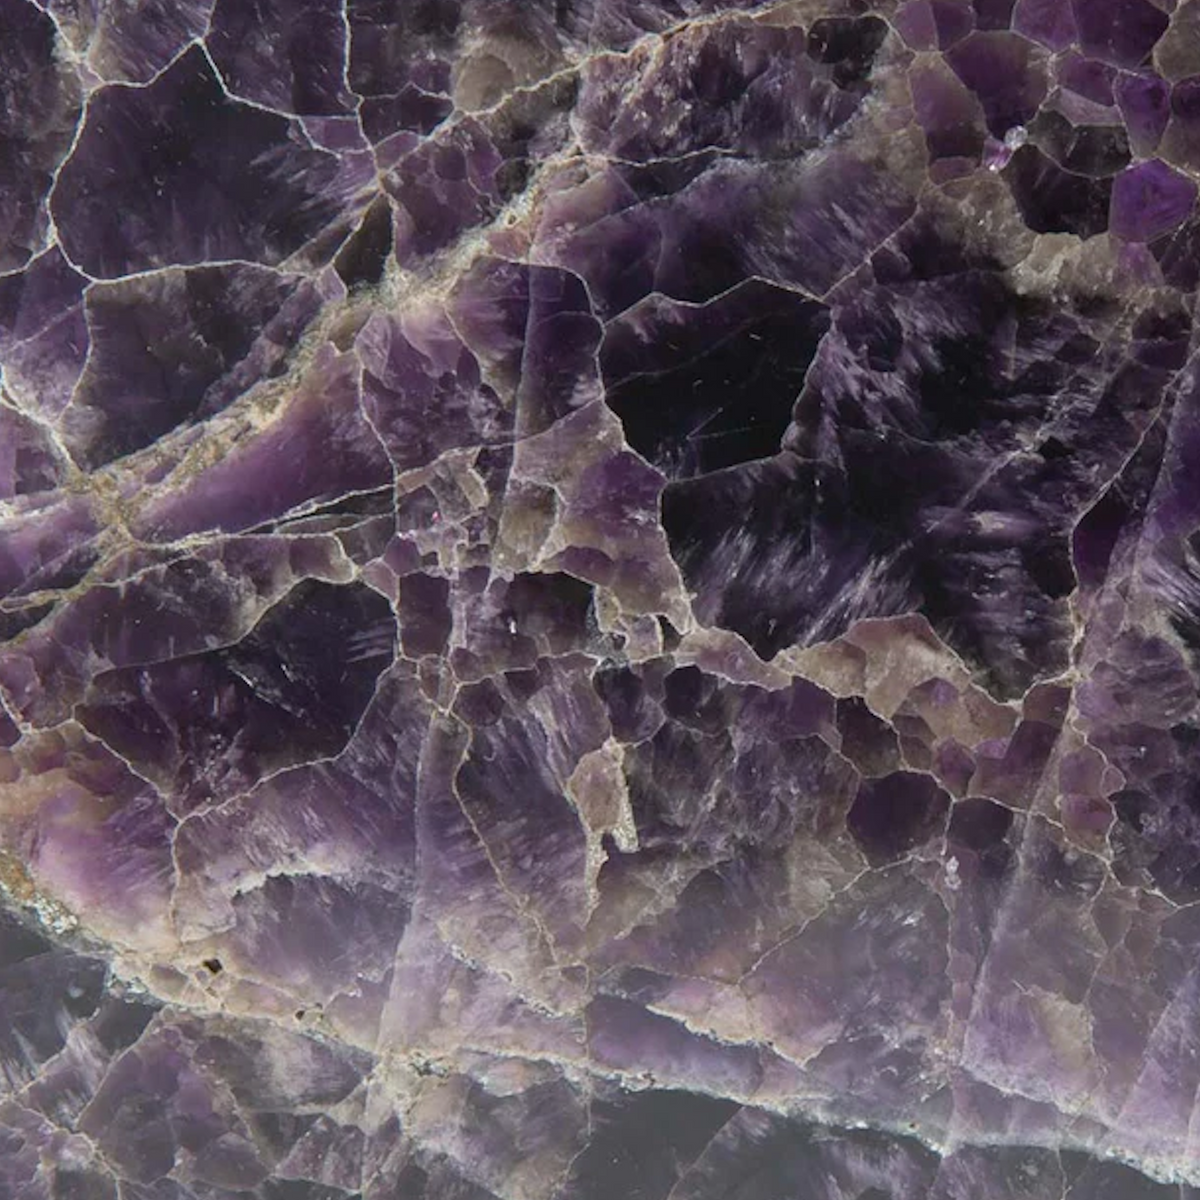 b, halfmoon Palm Crystal Amethyst closeup